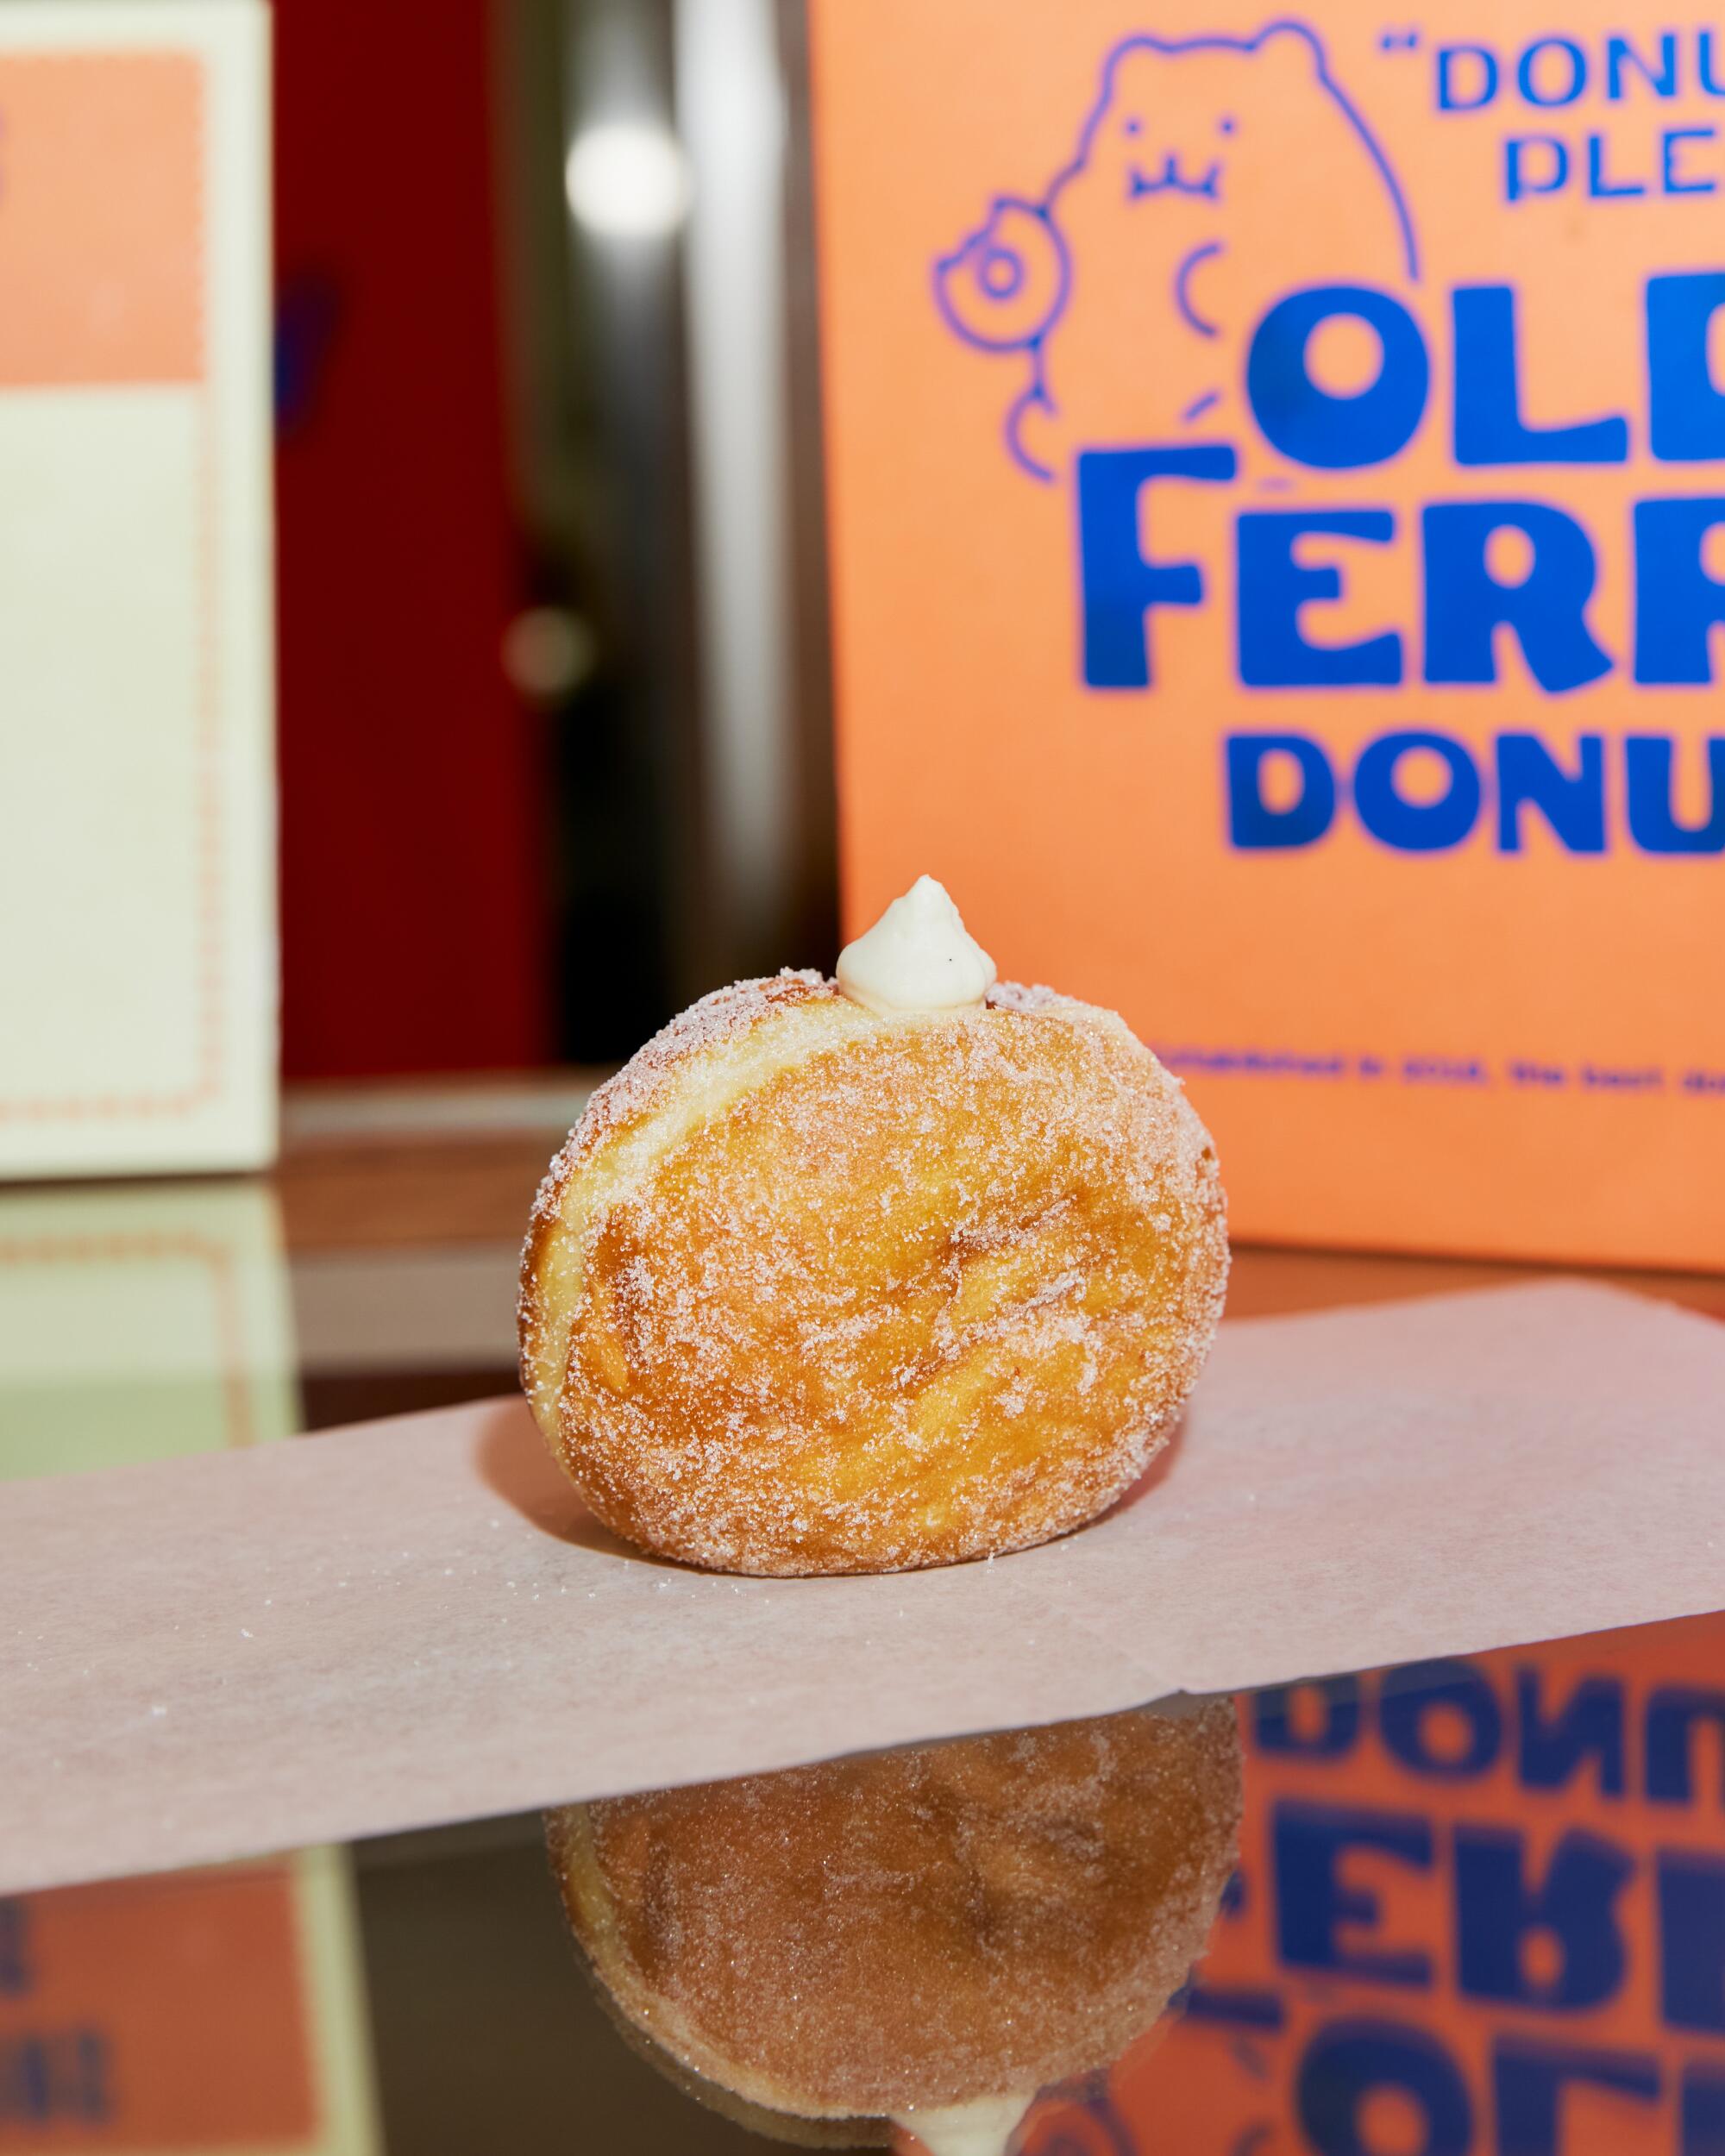 Das Source OC ist die Heimat des ersten Standorts von Old Ferry Donut in den USA, einem Konzept, das in Seoul erstmals vorgestellt wurde.